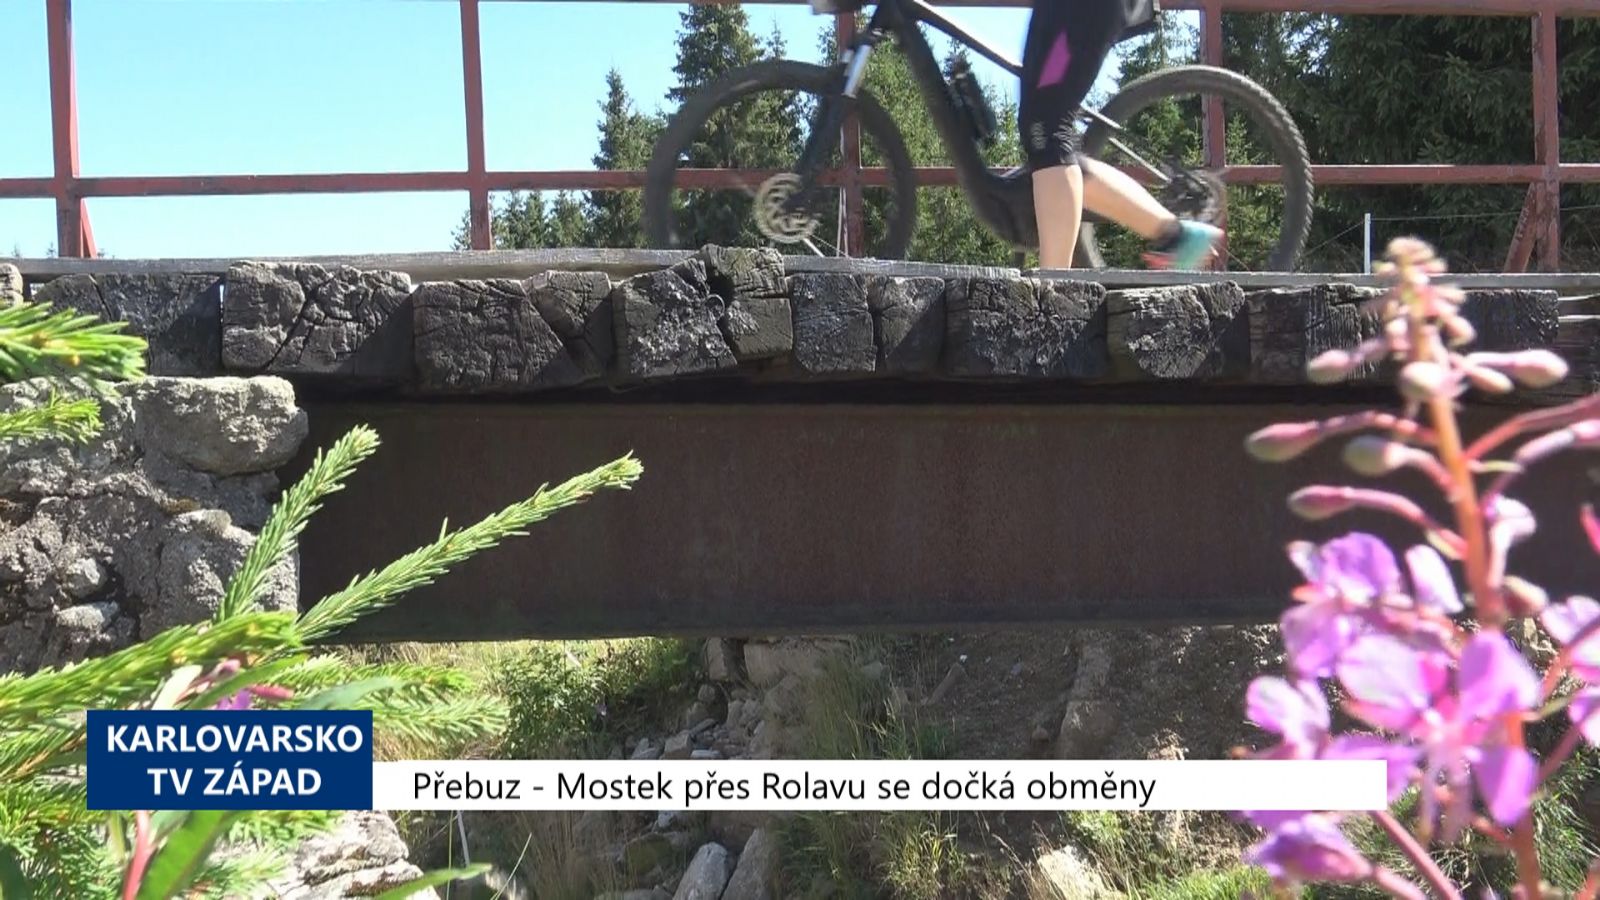 Přebuz: Mostek přes Rolavu se dočká obměny (TV Západ)